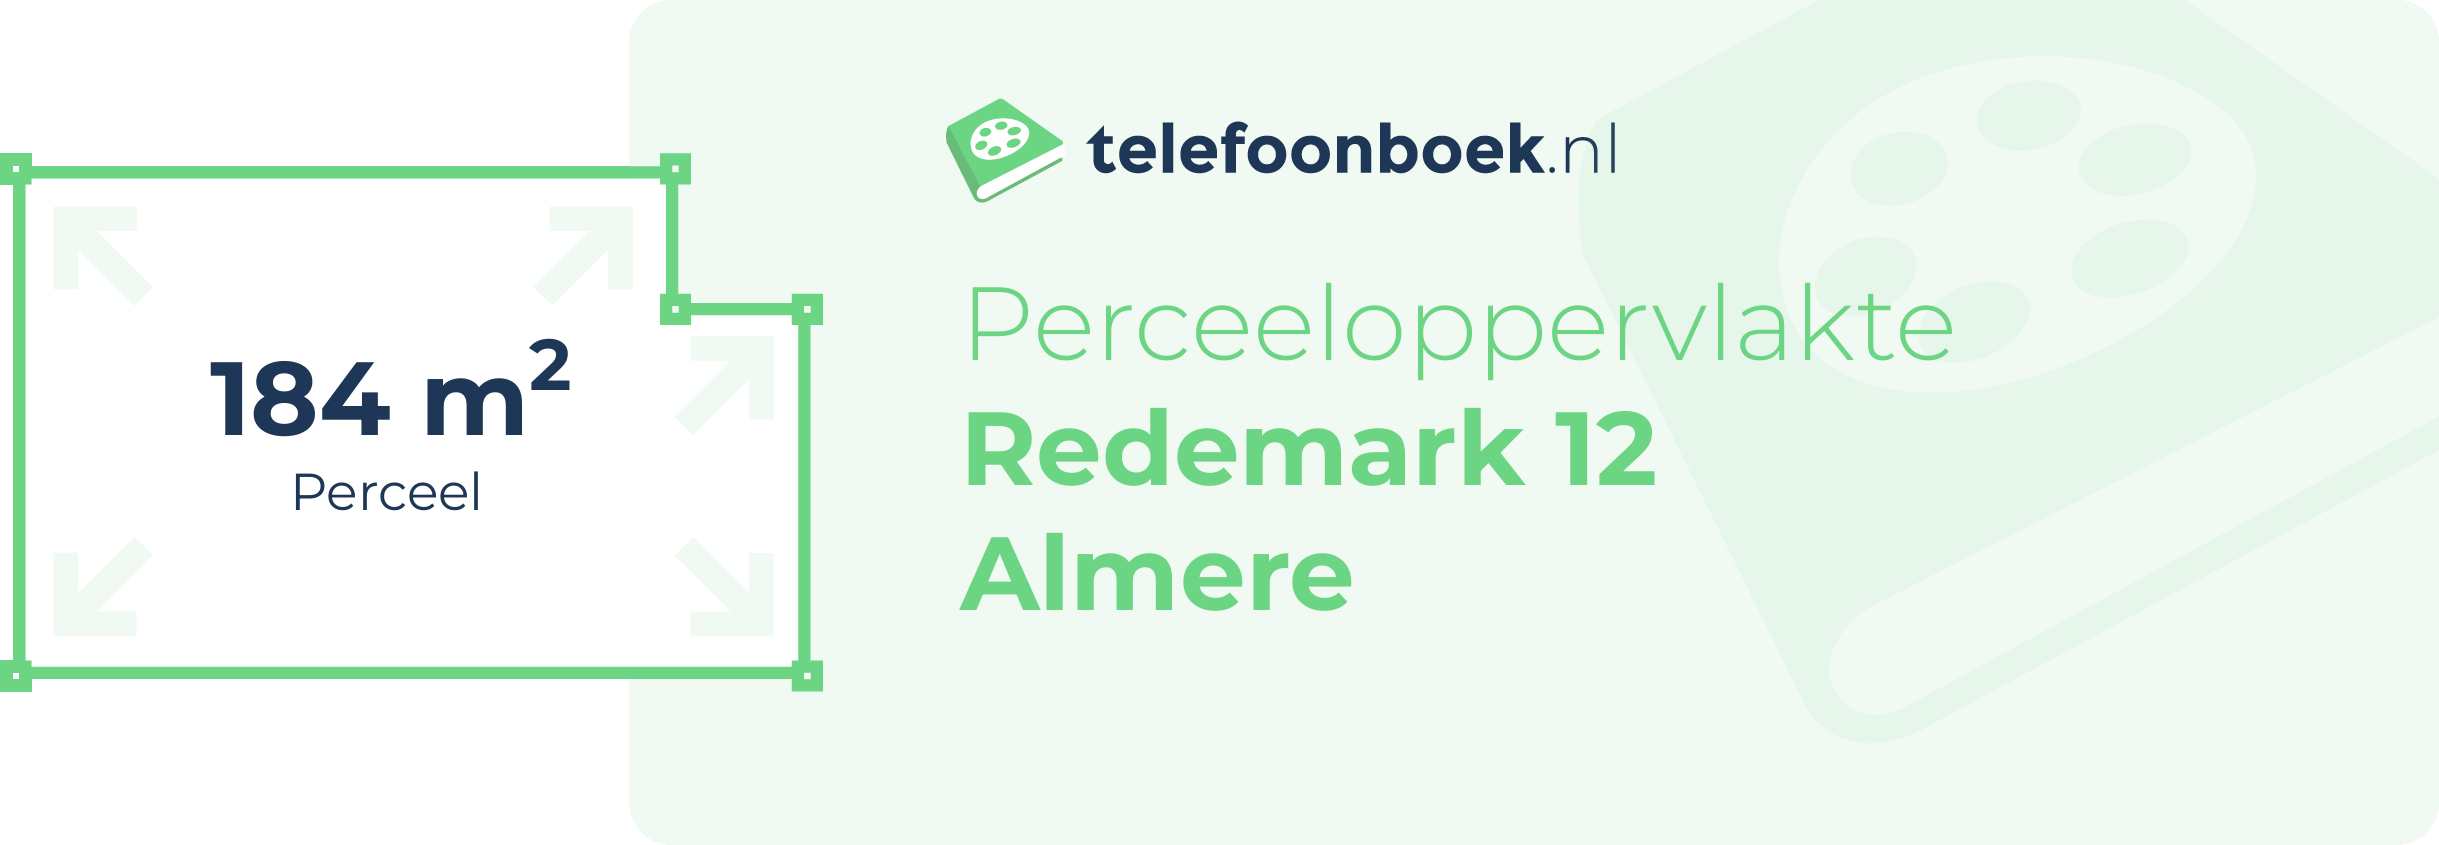 Perceeloppervlakte Redemark 12 Almere